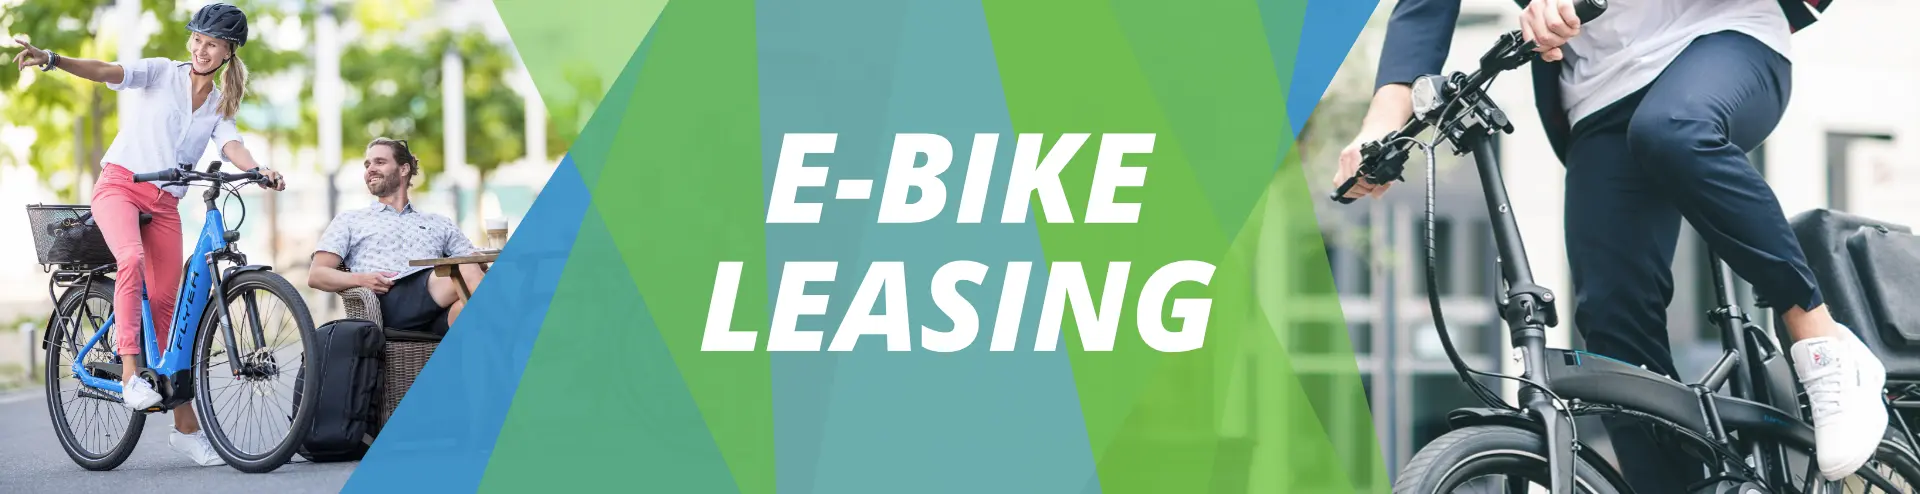 E-Bike Leasing